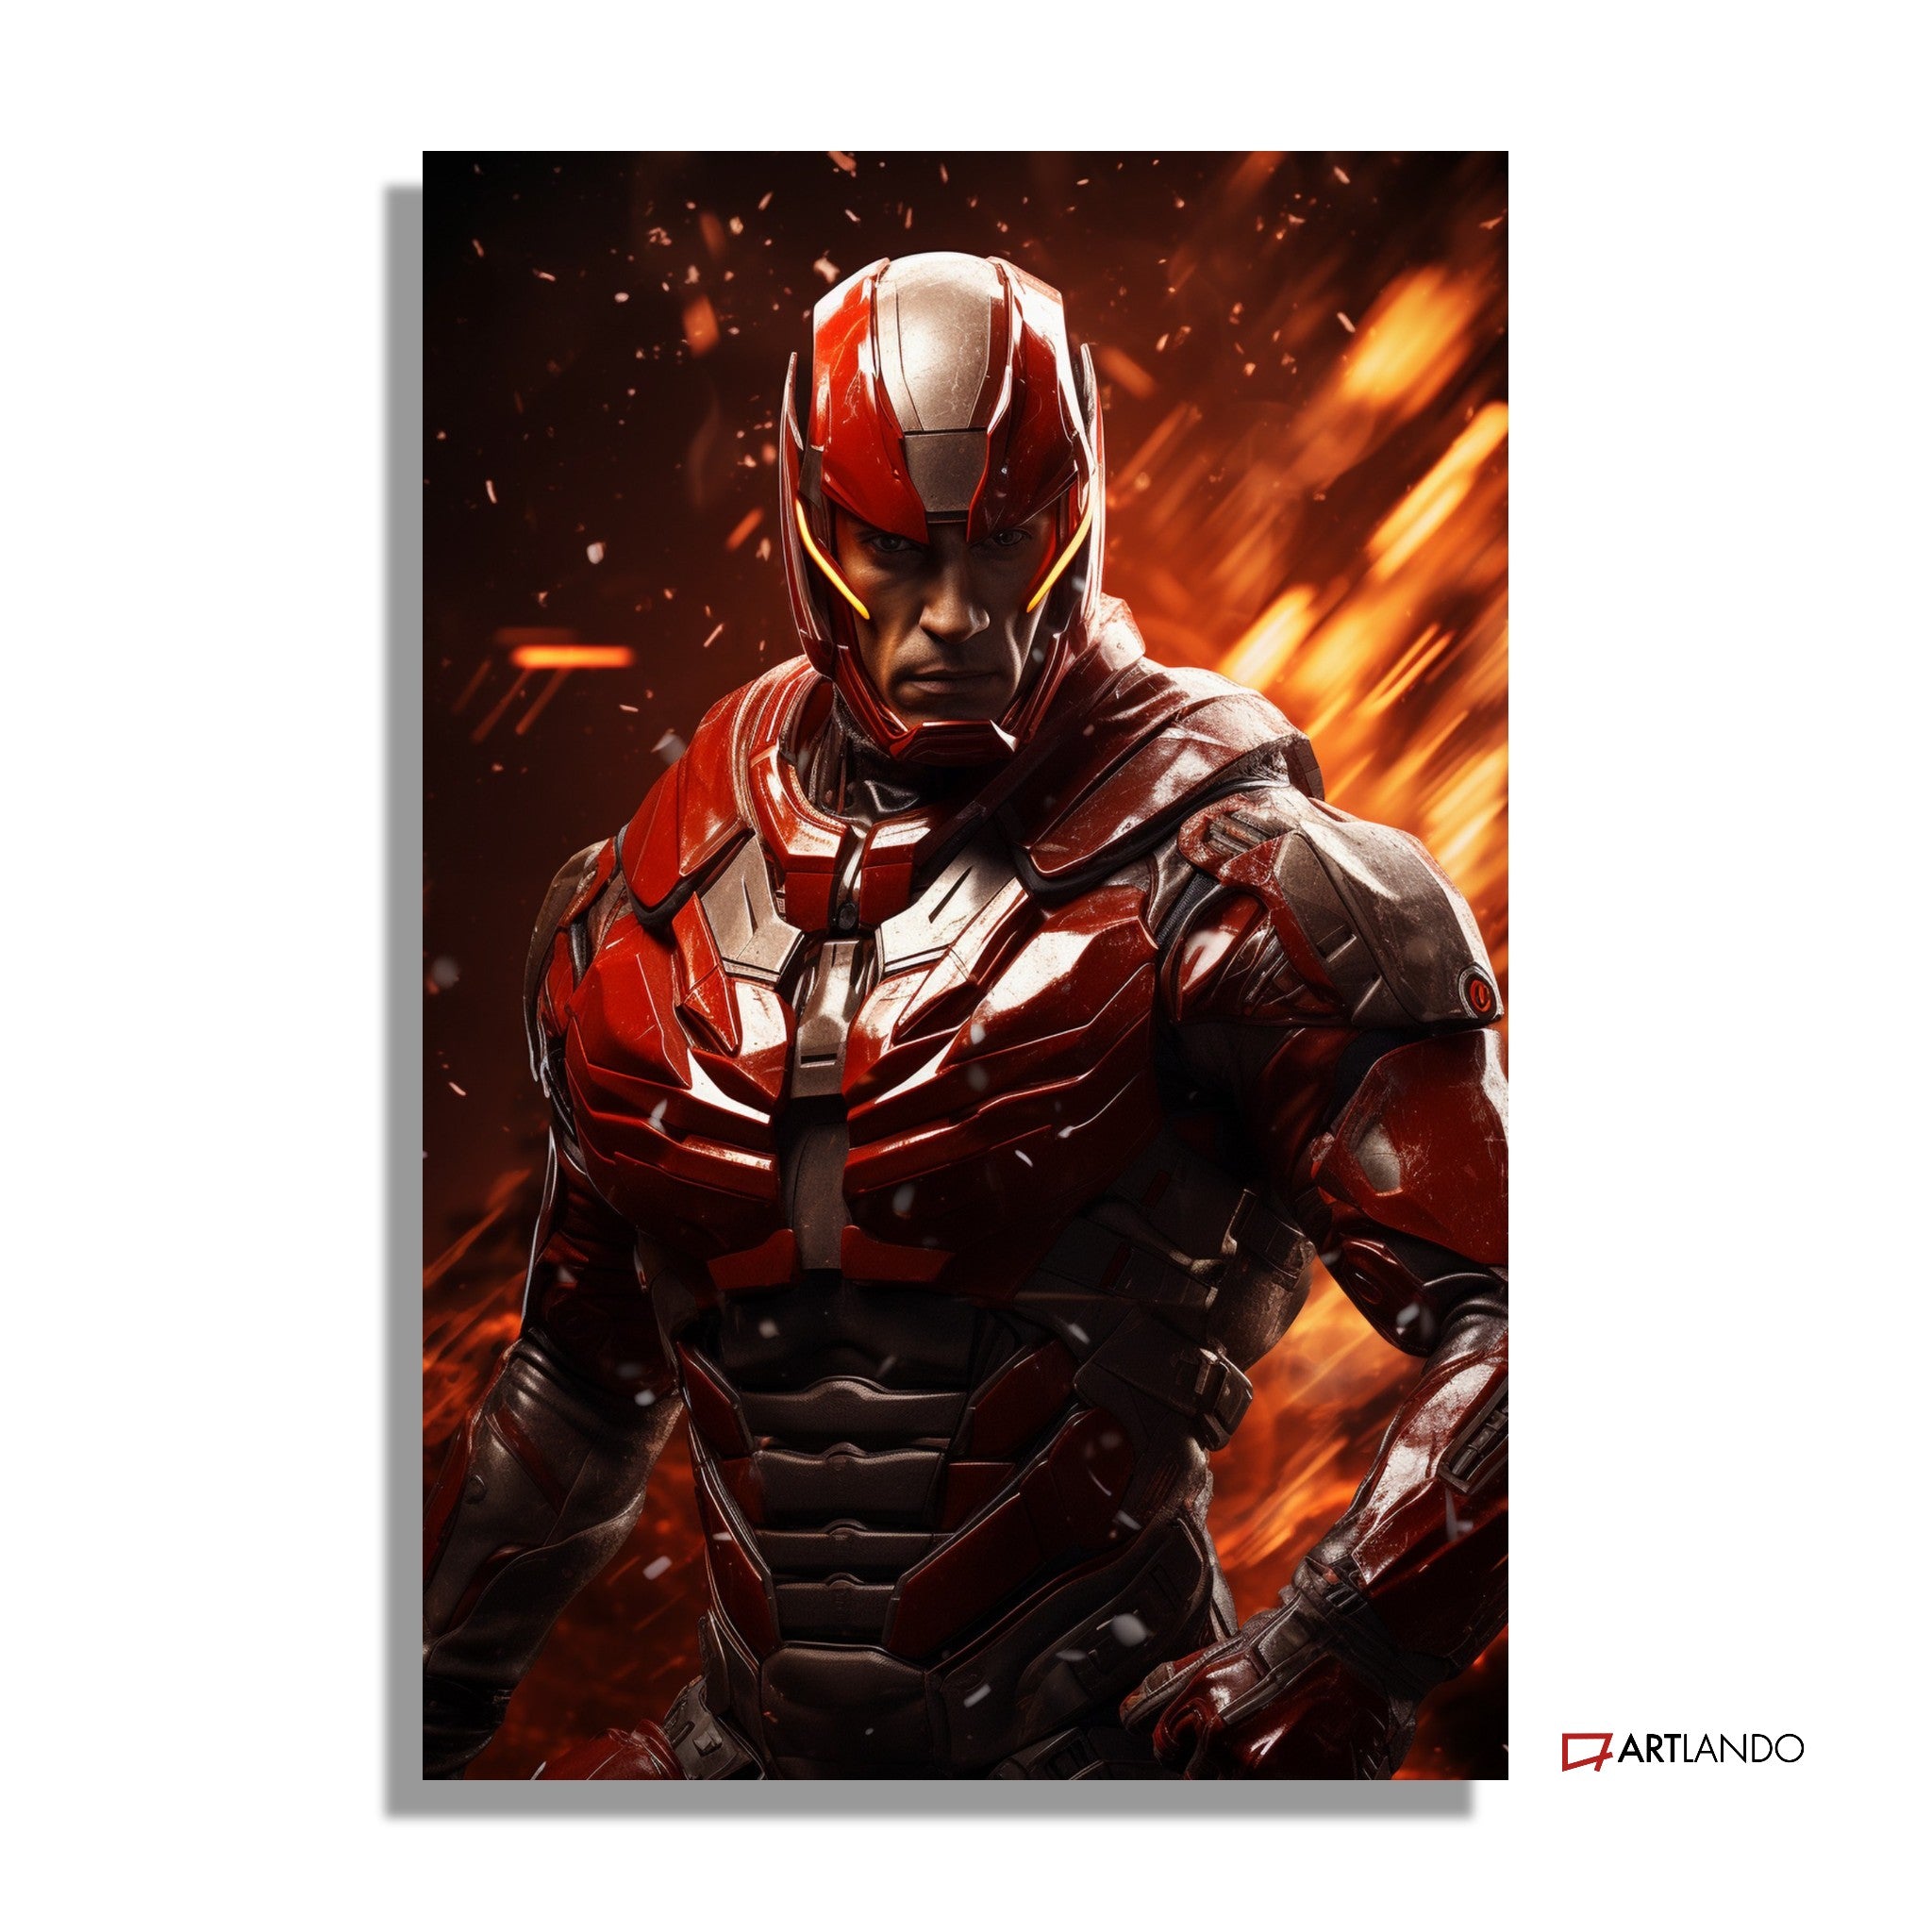 Superheld in metallisch-rotem Anzug in Action